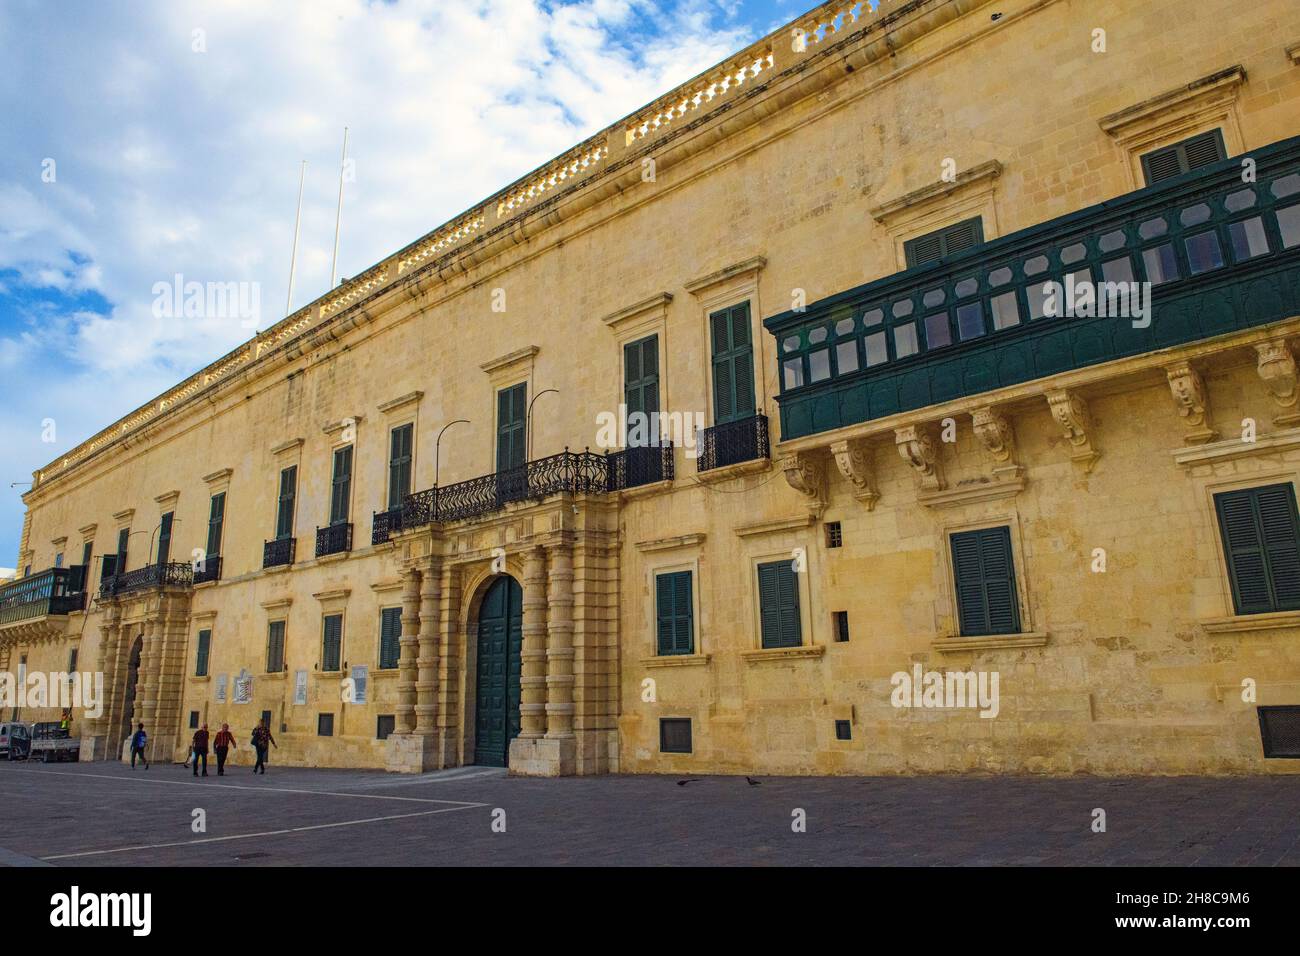 Fassade von Palast von Großmeister, la Valette, Malte, Europa Banque D'Images